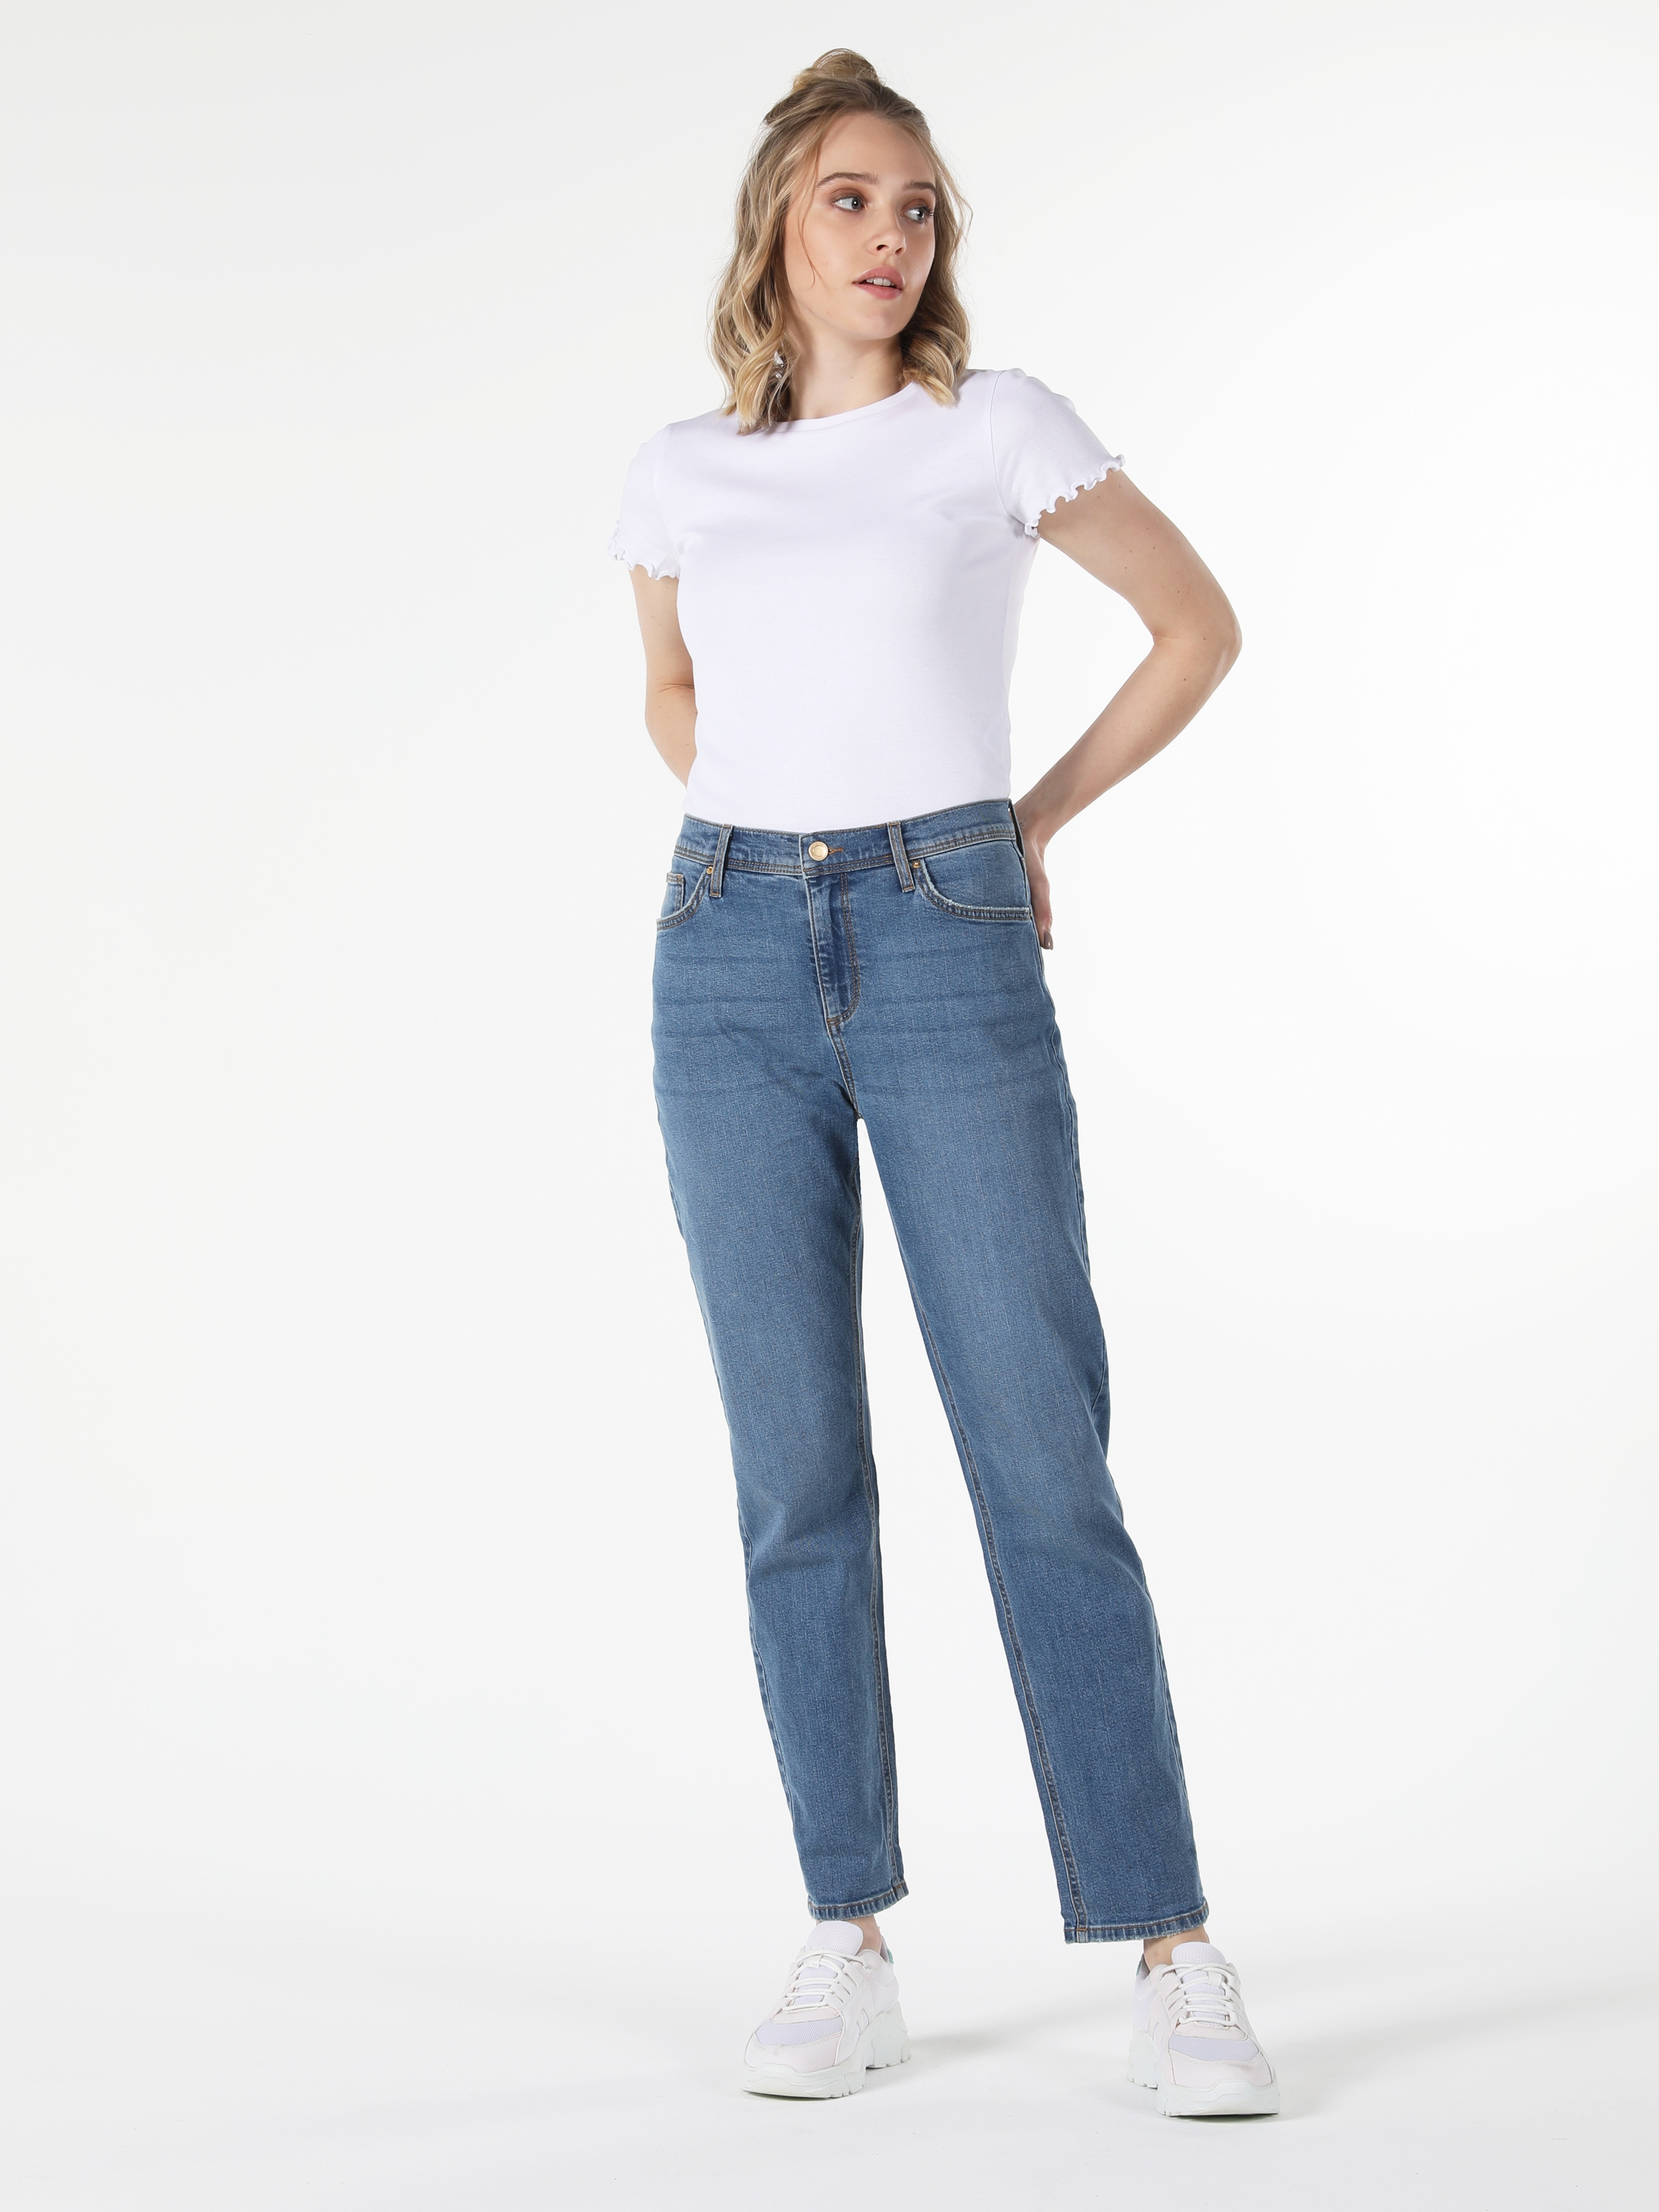 Afficher les détails de 893 Julia Pantalon En Jean Bleu Taille Moyenne Coupe Régulière Jambe Droite Pour Femme